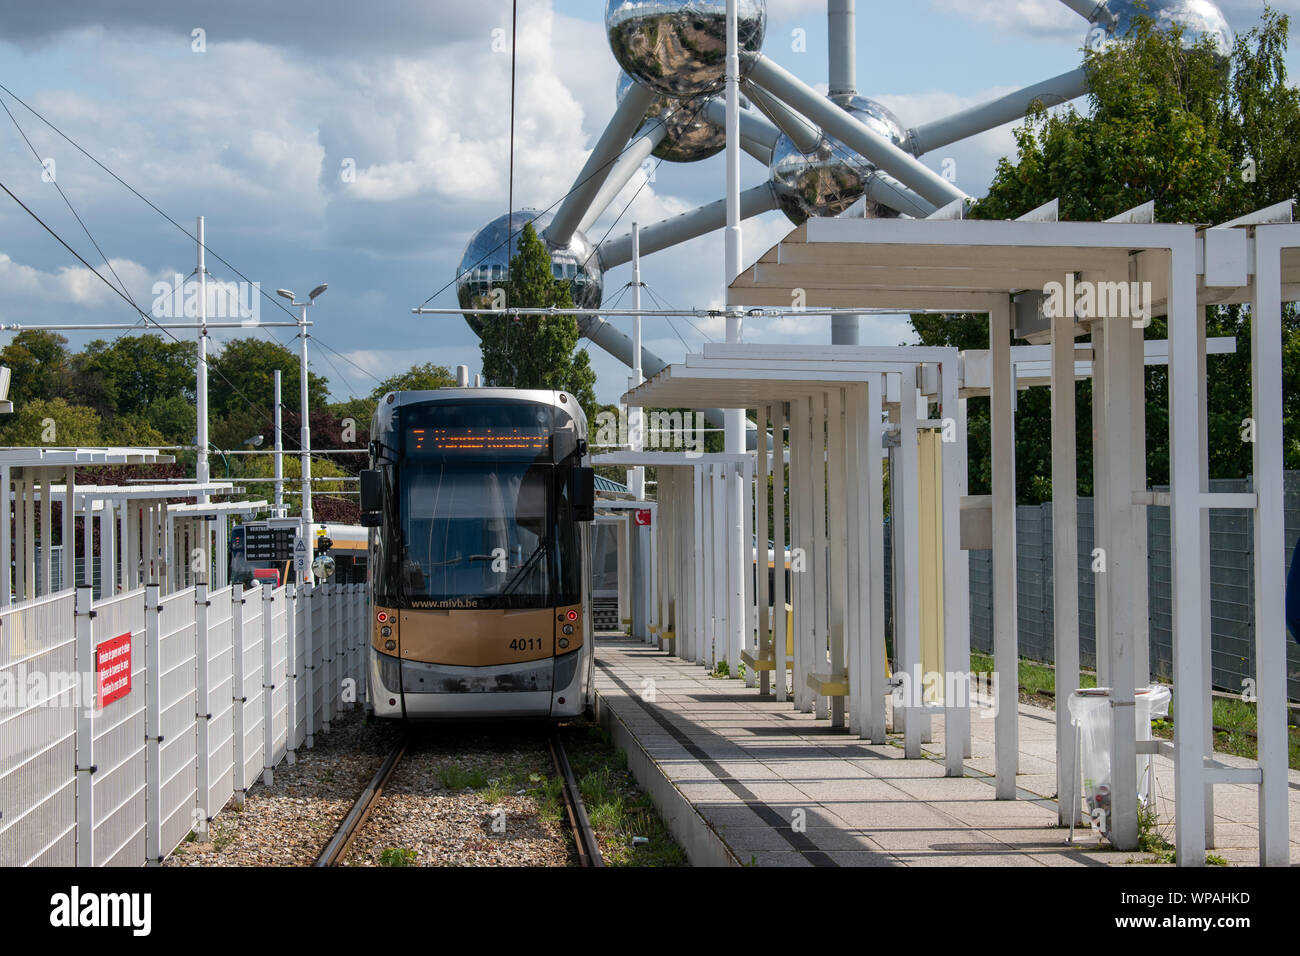 Belgique - transports publics tram près de l'Atomium à Bruxelles Banque D'Images